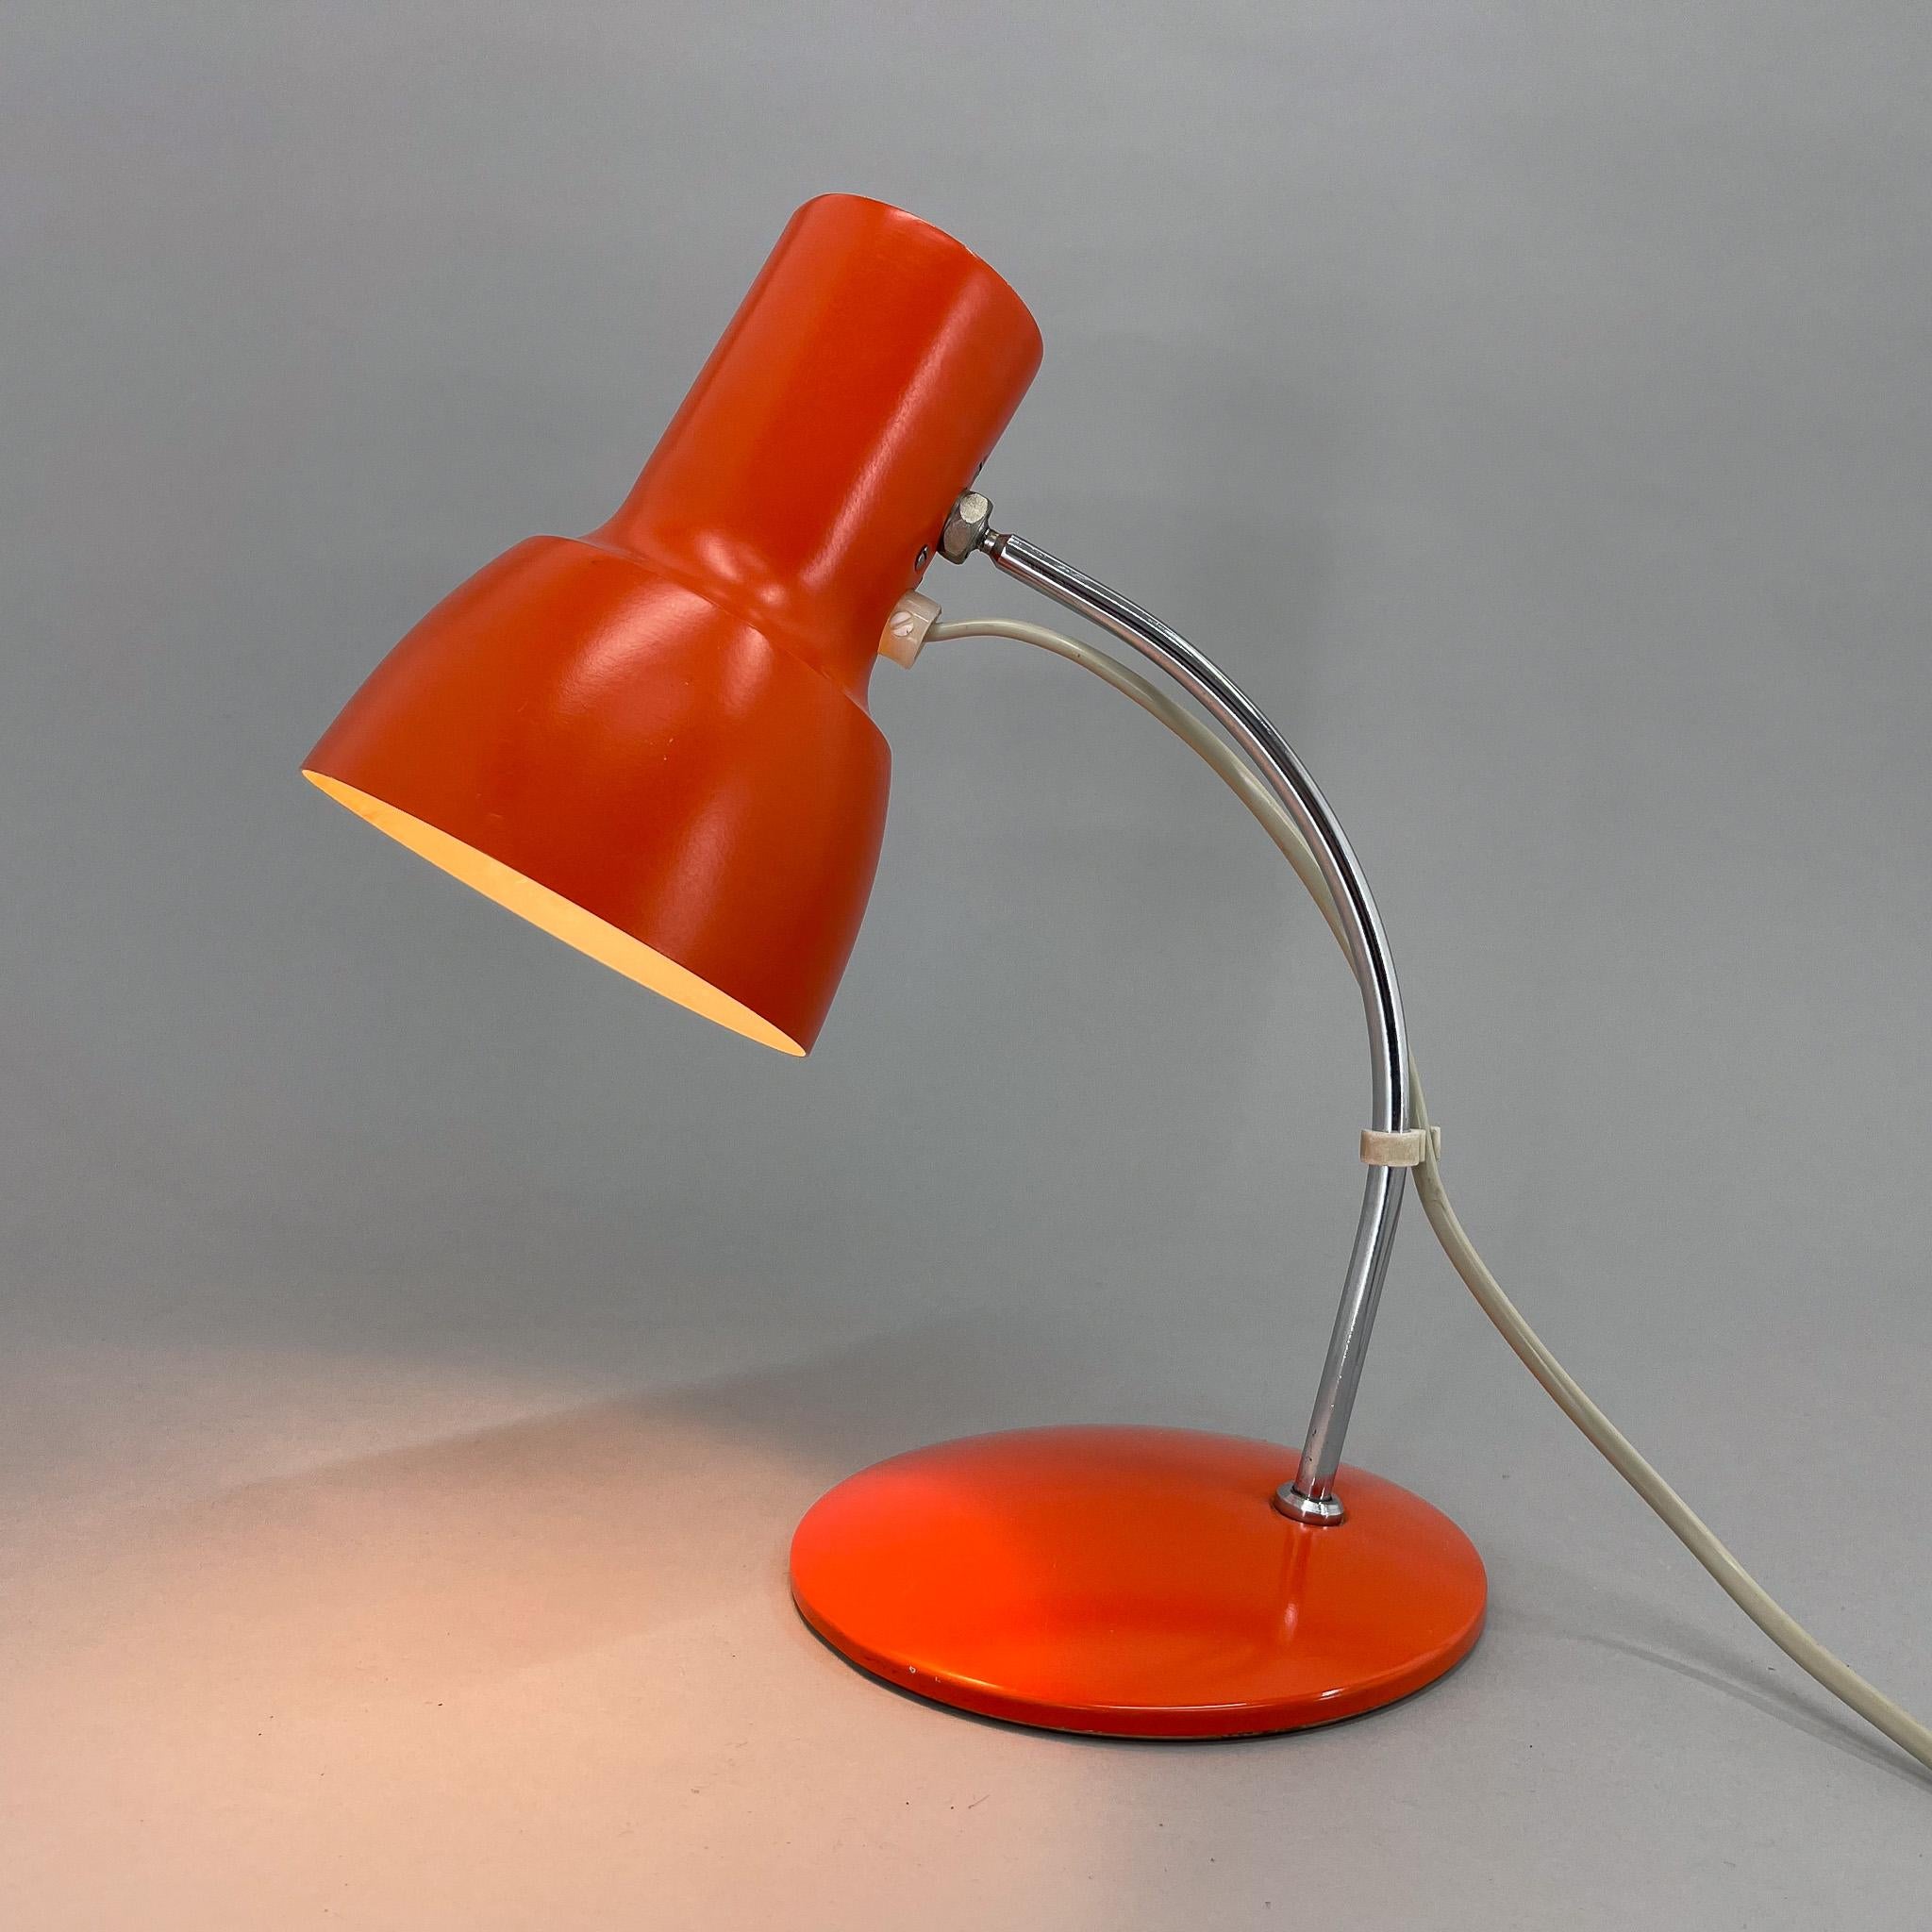 Vintage orange Metall und Chrom Tischlampe mit verstellbarem Lampenschirm. Produziert in der ehemaligen Tschechoslowakei in den 1970er Jahren. 
Glühbirne: 1x E14. Inklusive US-Steckeradapter.